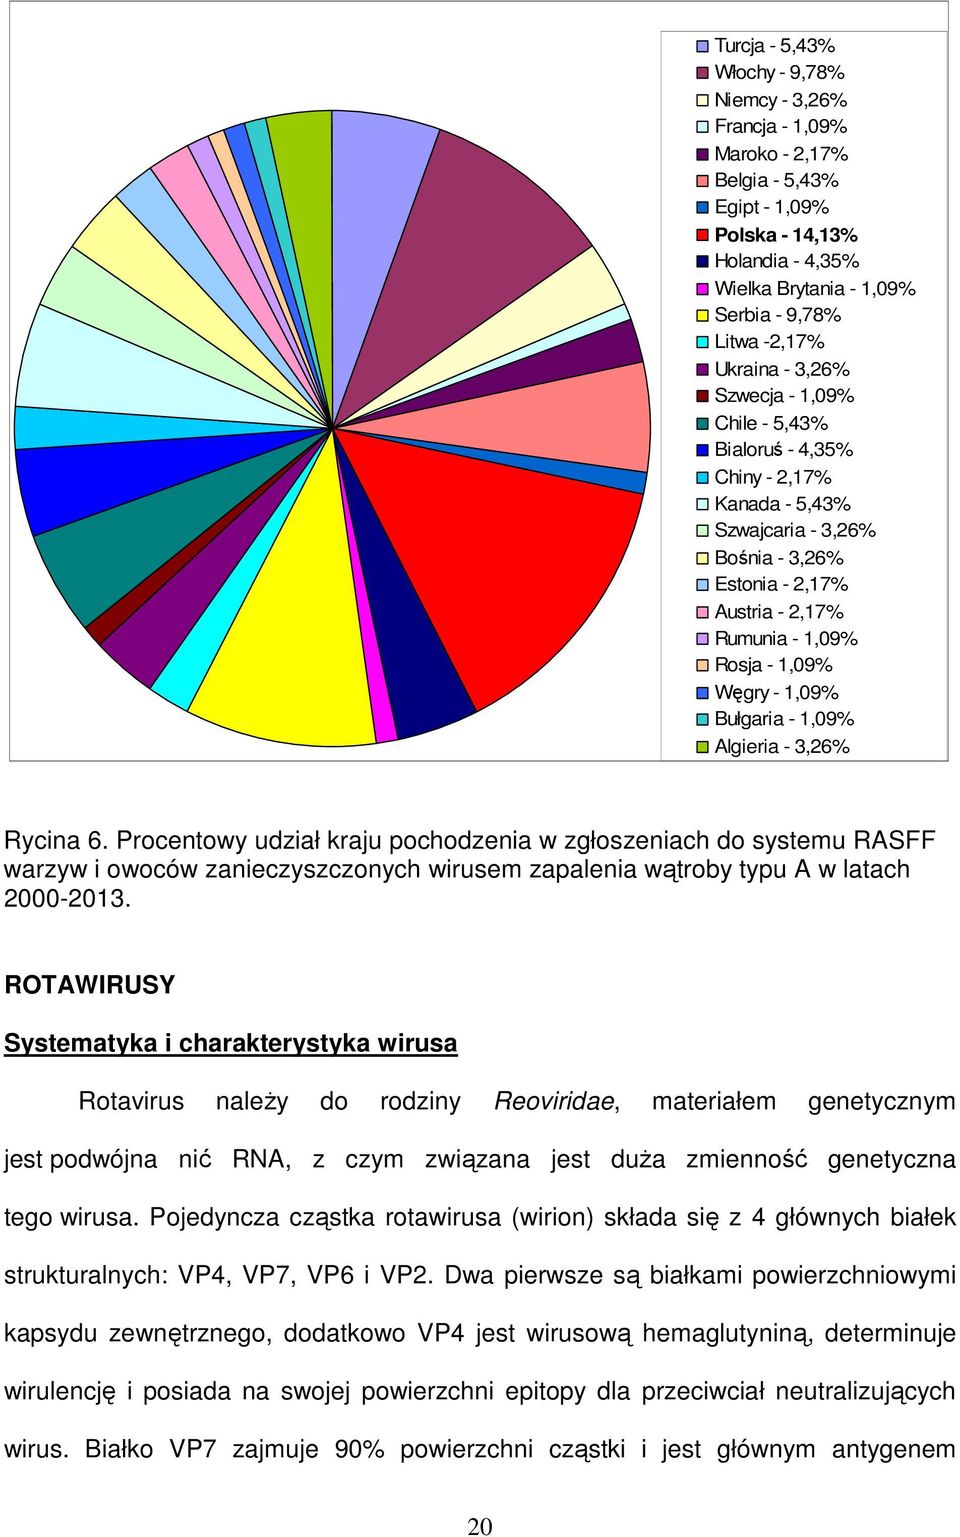 Bułgaria - 1,09% Algieria - 3,26% Rycina 6. Procentowy udział kraju pochodzenia w zgłoszeniach do systemu RASFF warzyw i owoców zanieczyszczonych wirusem zapalenia wątroby typu A w latach 2000-2013.